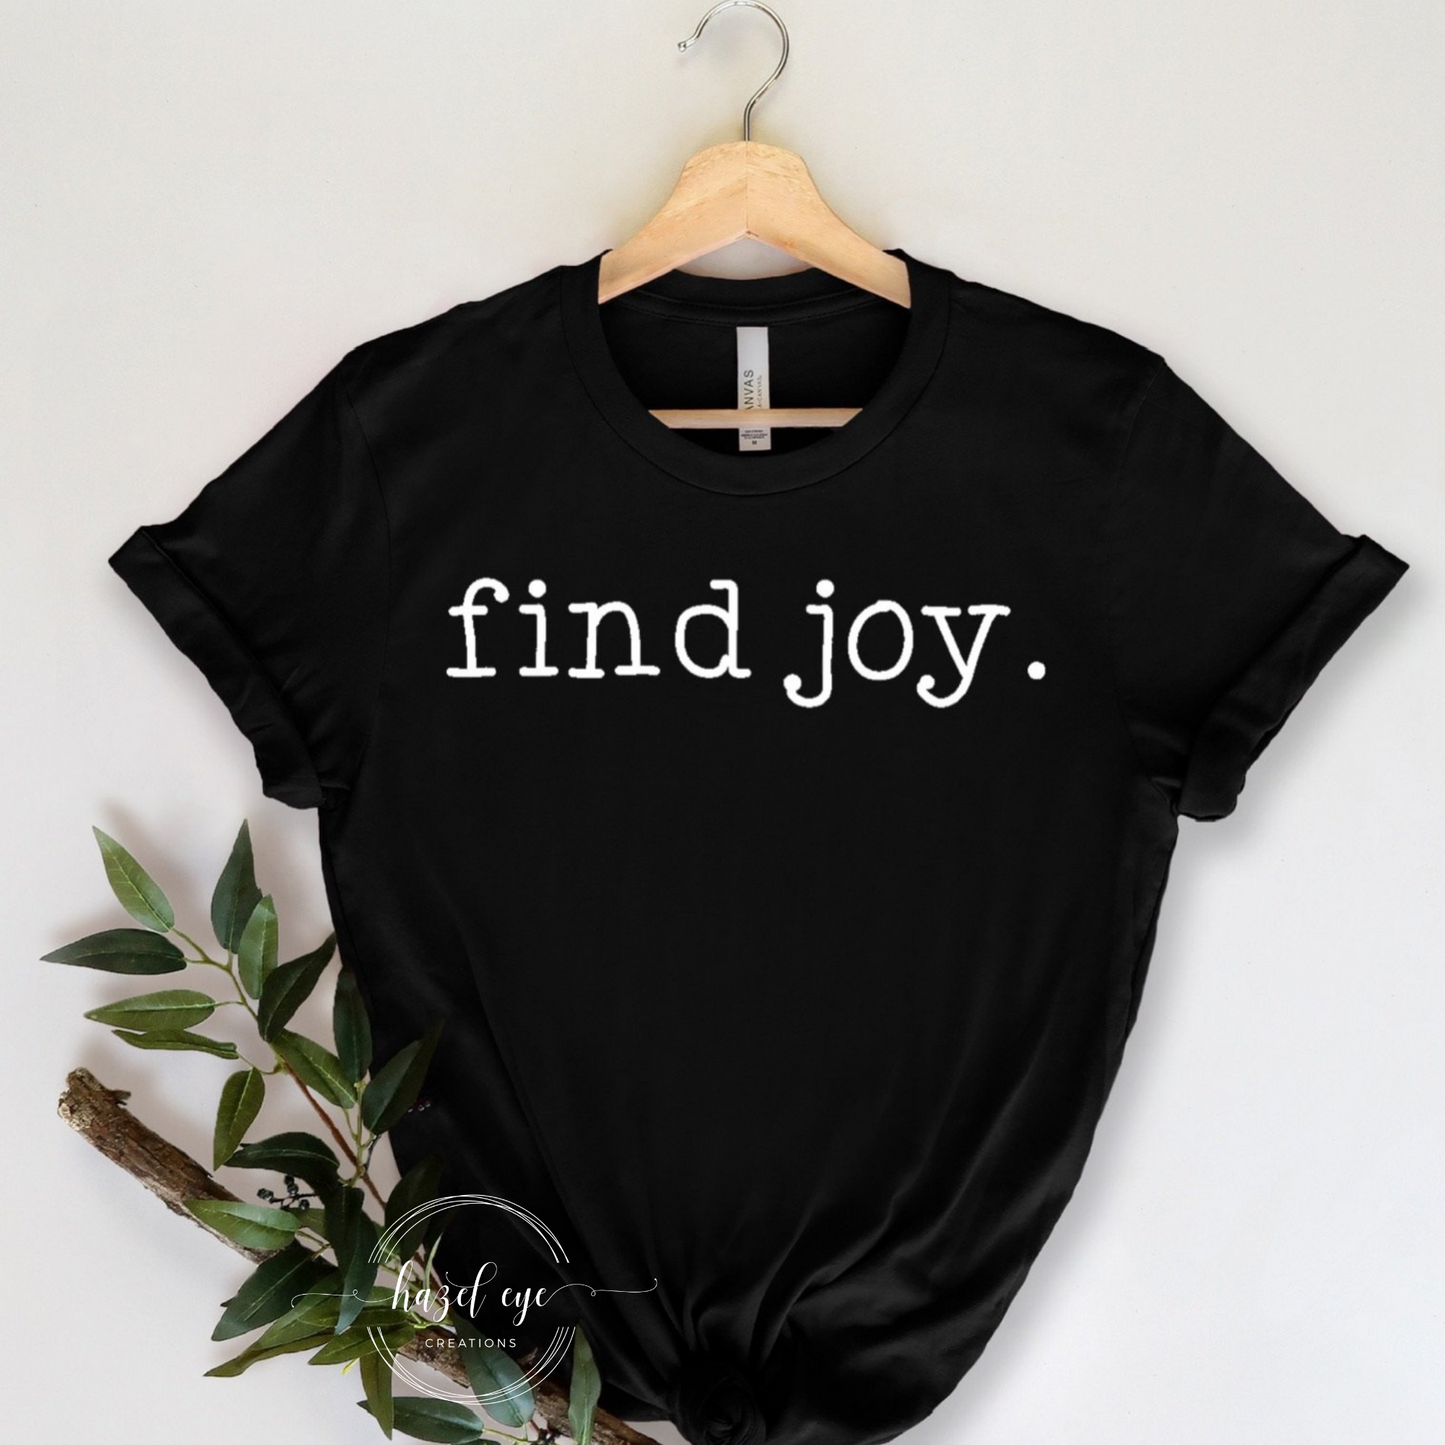 Find joy